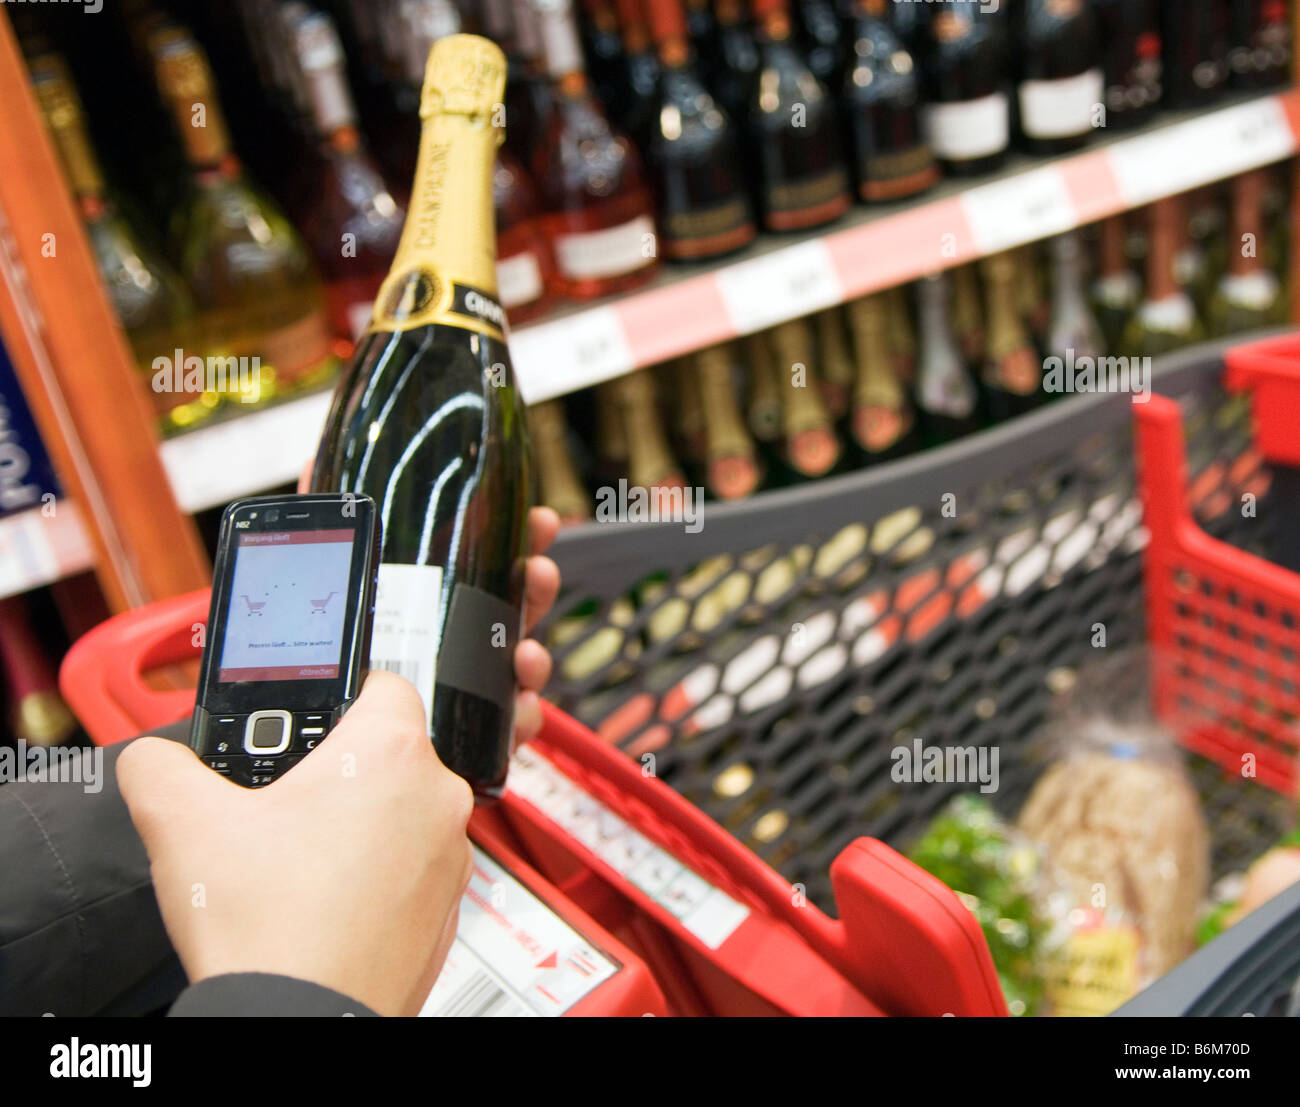 Jeune femme analyse le prix d'une bouteille de champagne dans son téléphone cellulaire dans un supermarché Banque D'Images